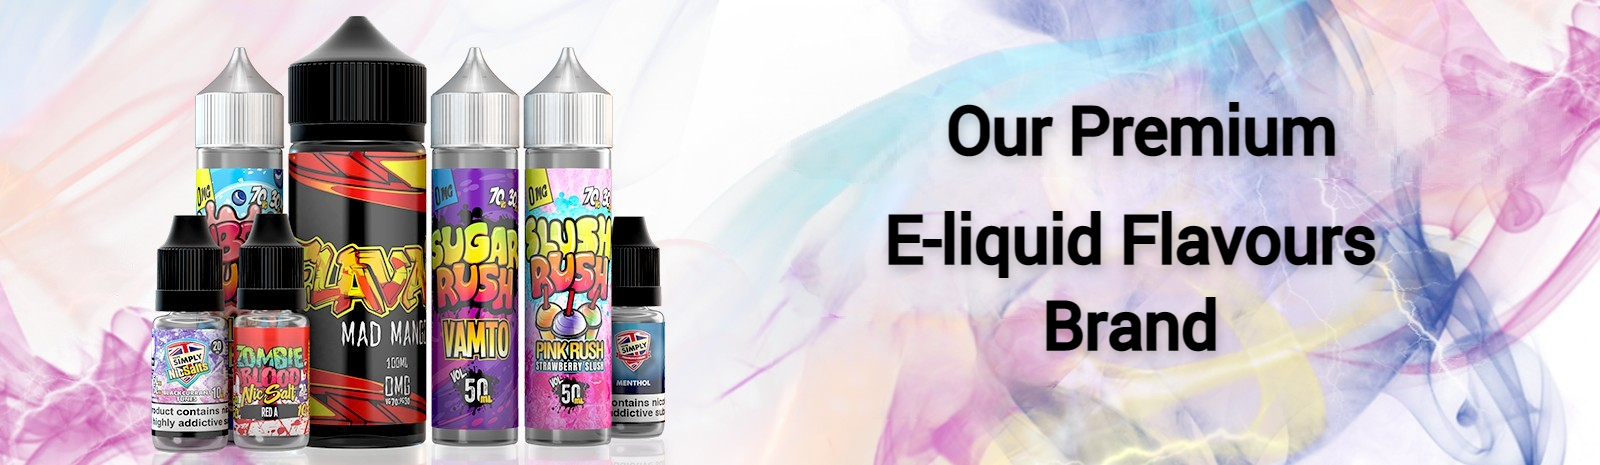 Our Premium E-Liquid Flavours